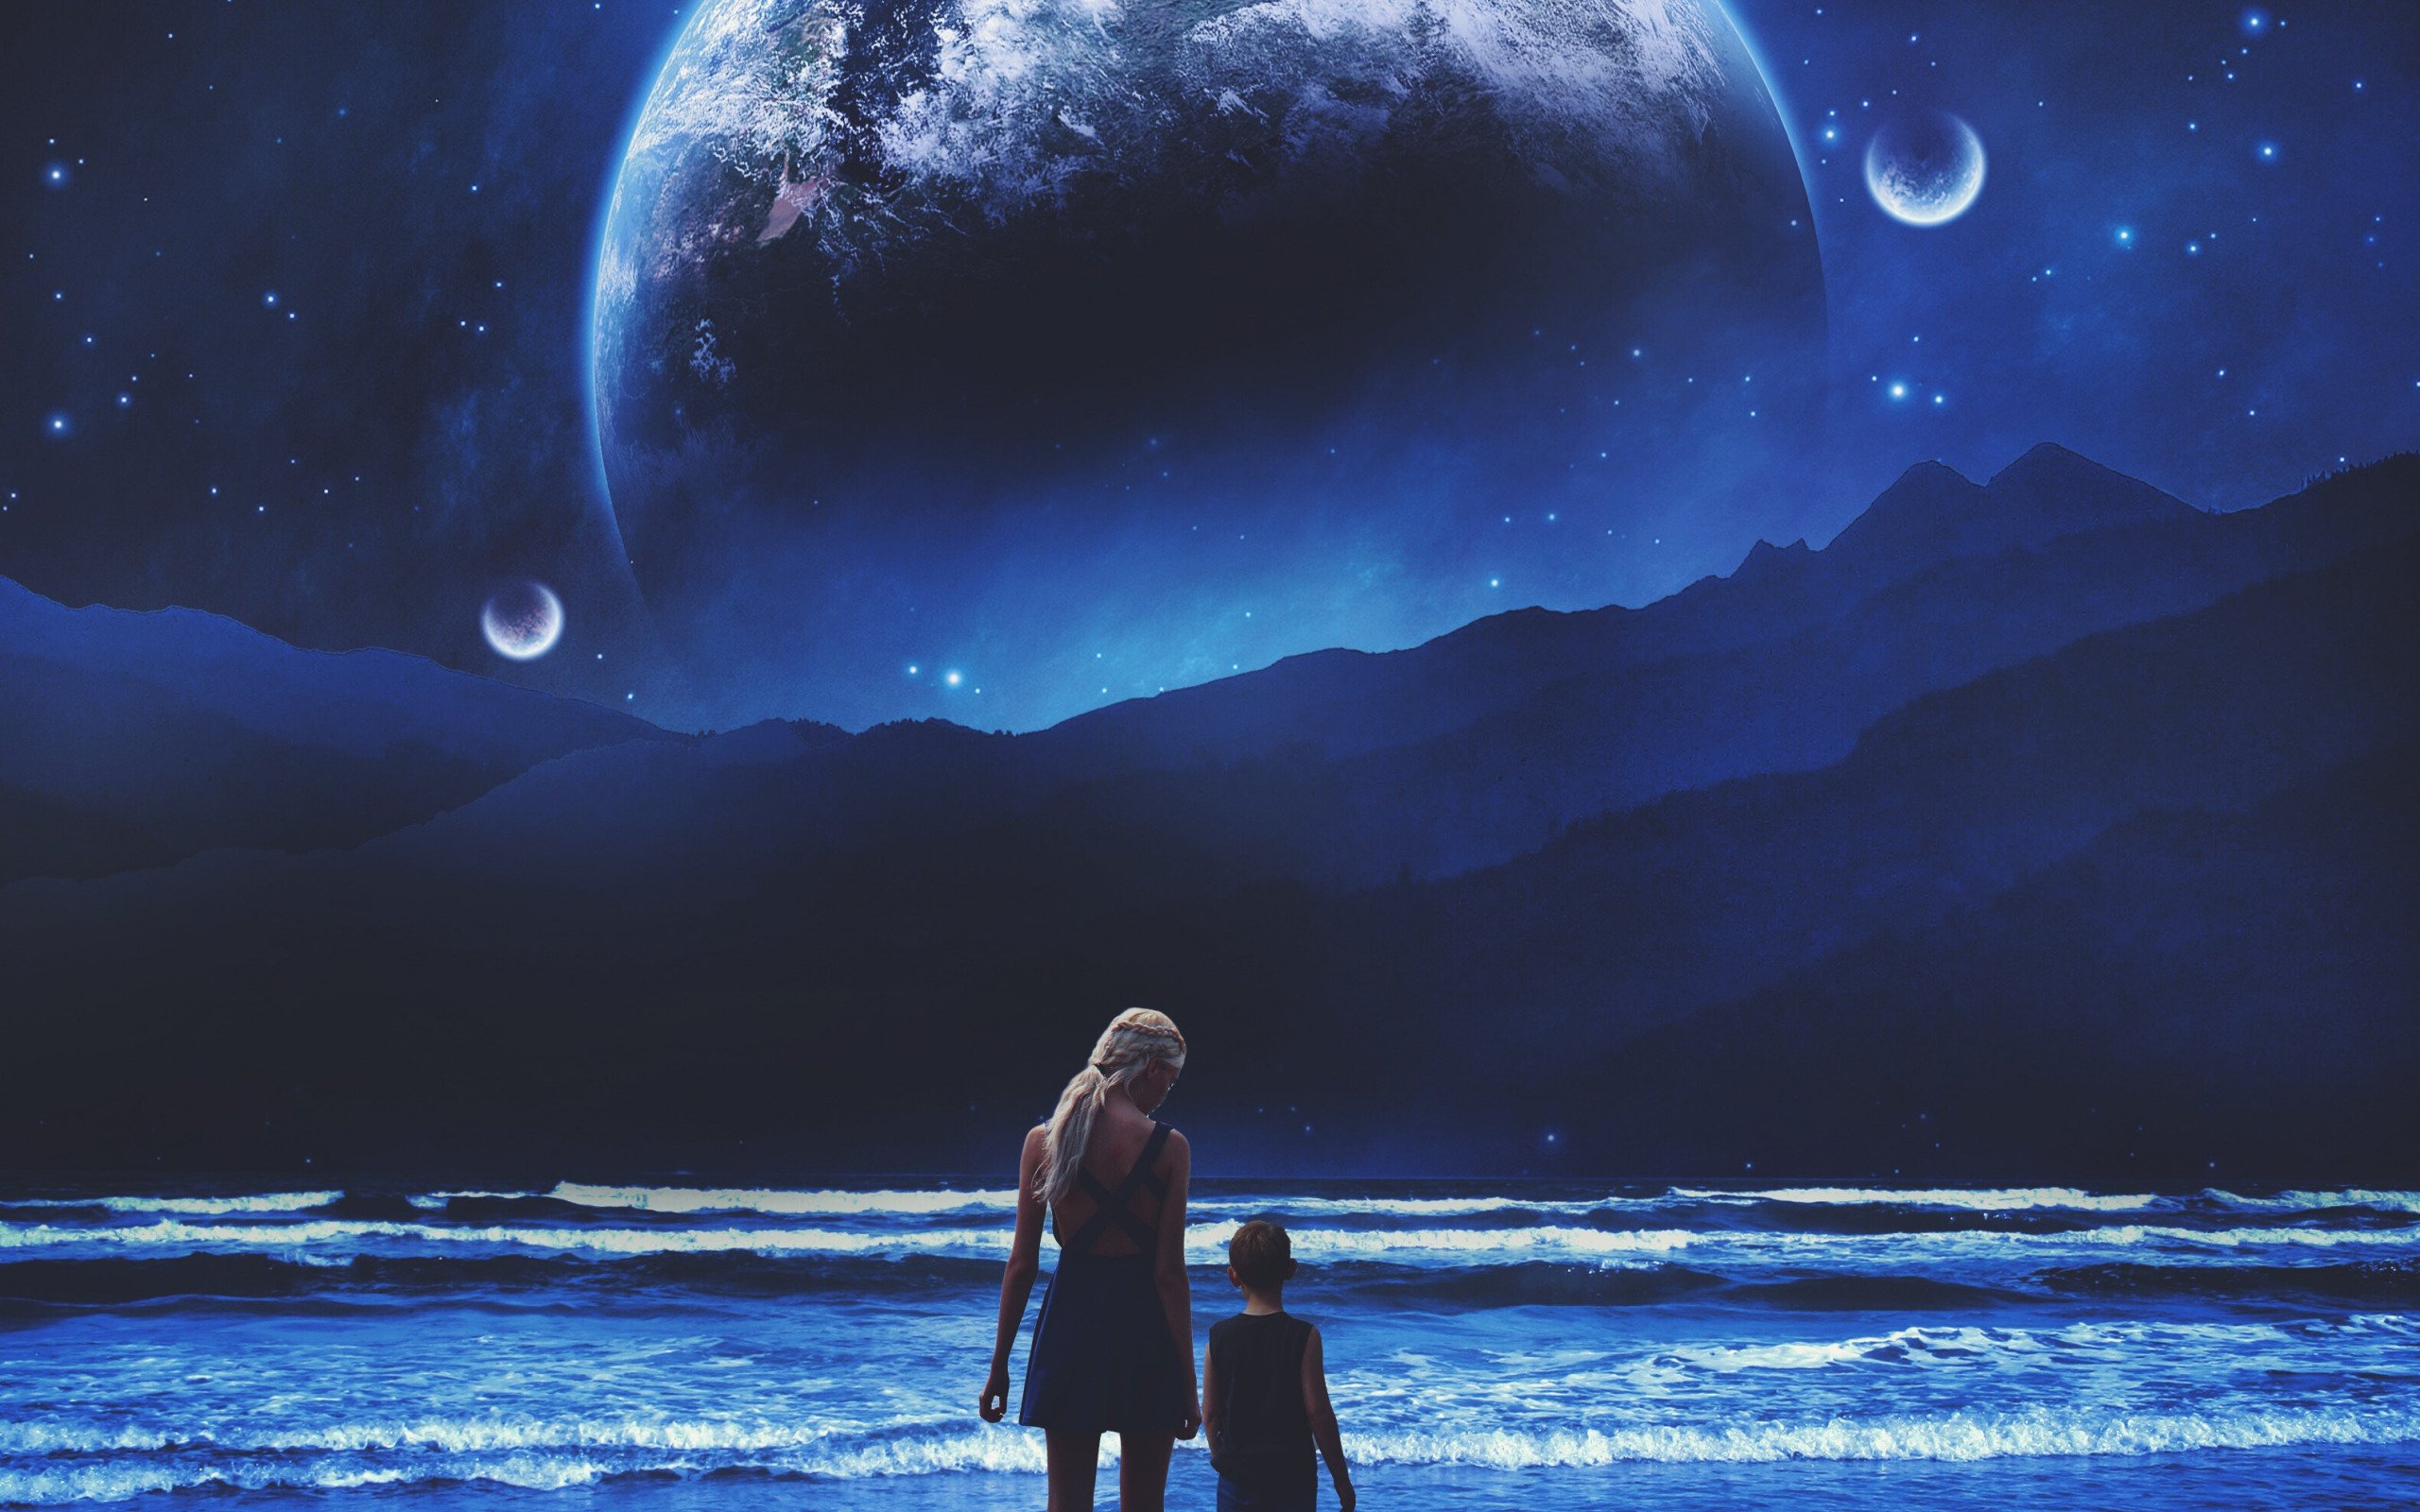 Мечты о полетах в космос. Космос фэнтези. Космический пейзаж. Звездное небо с луной. Фантастическое ночное небо и девушка.